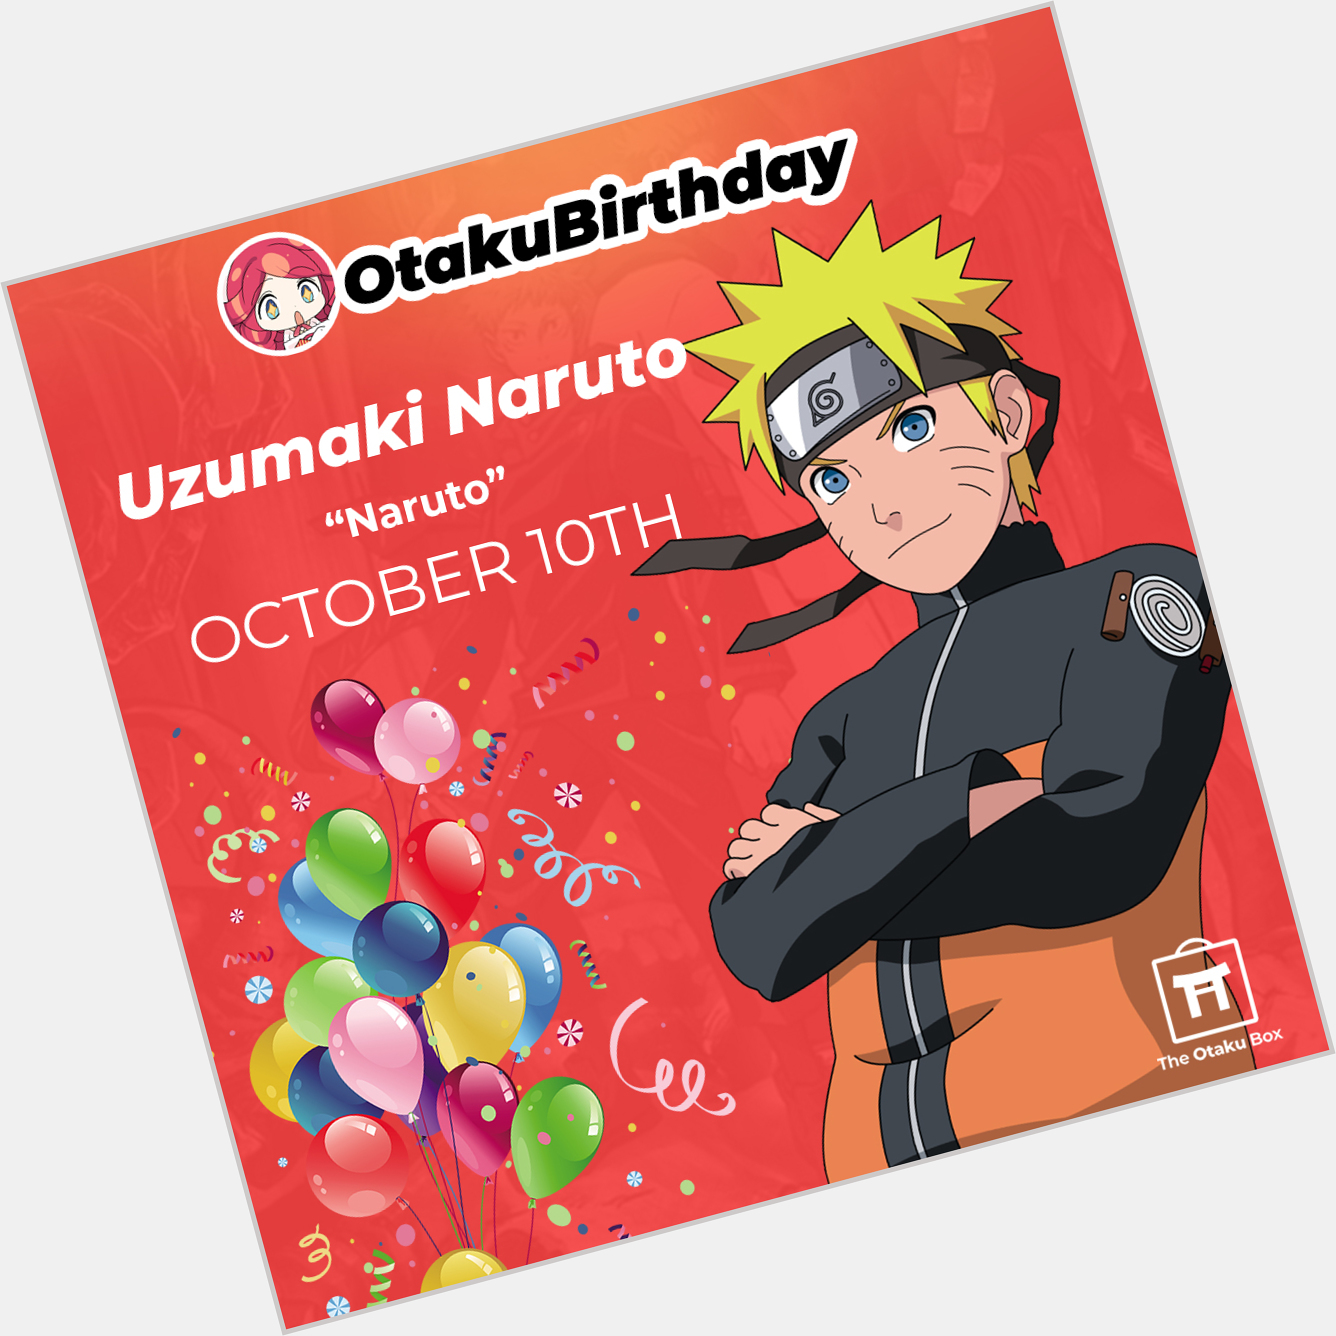  Happy birthday to Uzumaki Naruto! Party time, YATTA! -Liz 